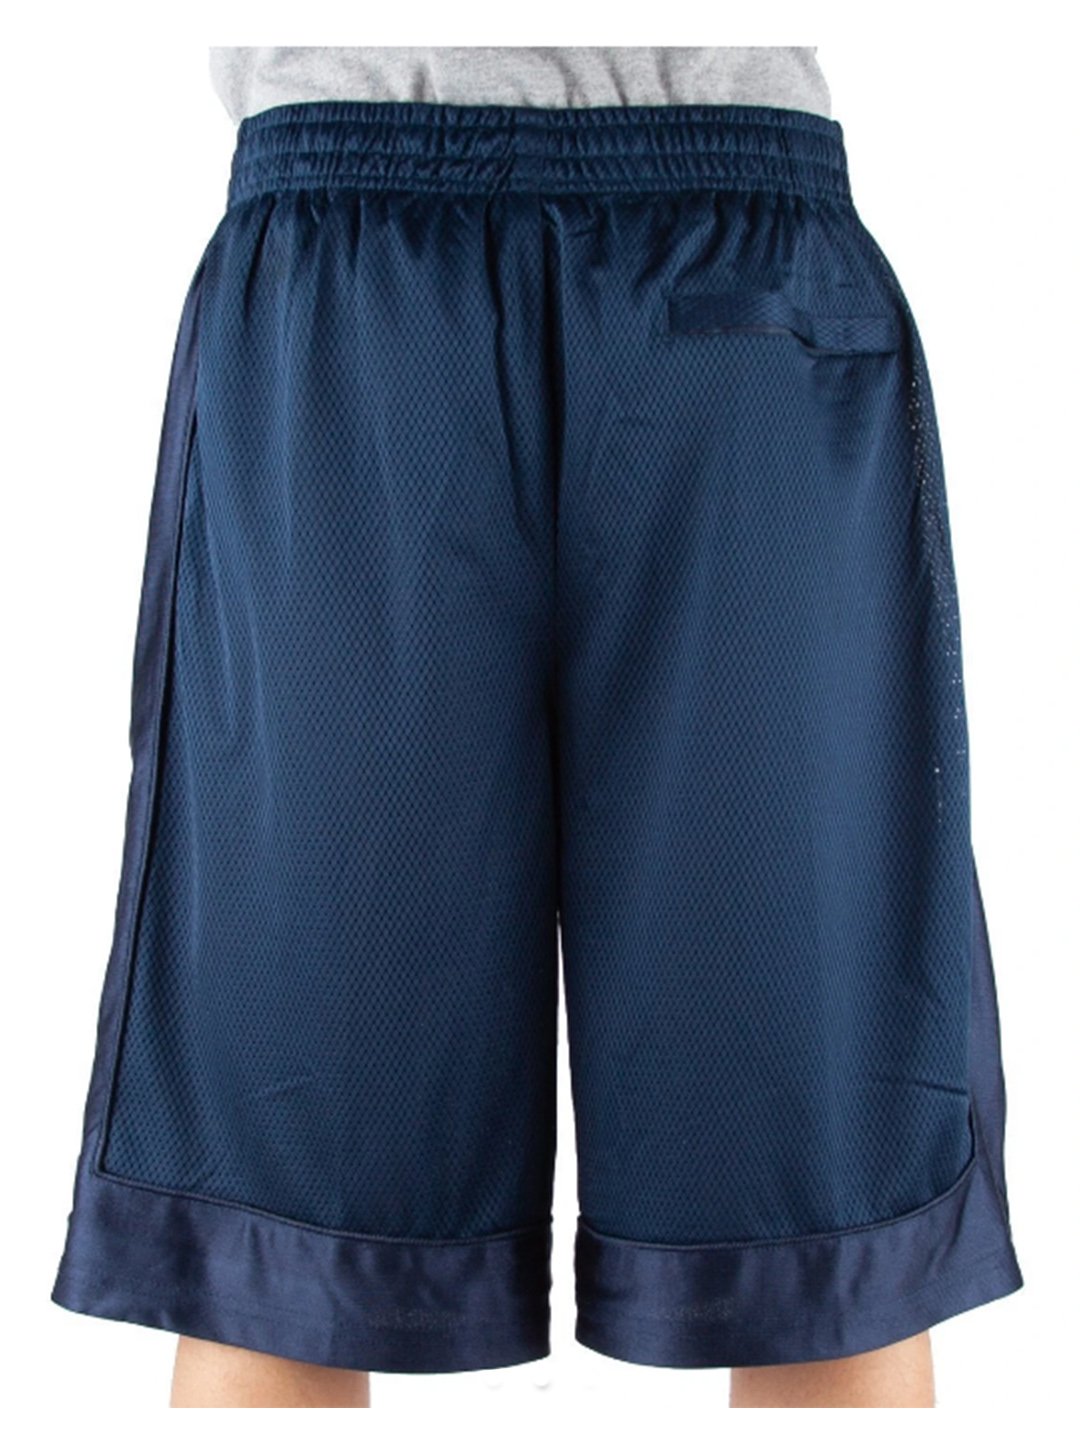 KROST Men's Moiré Mesh Shorts - Rubber - Size Large